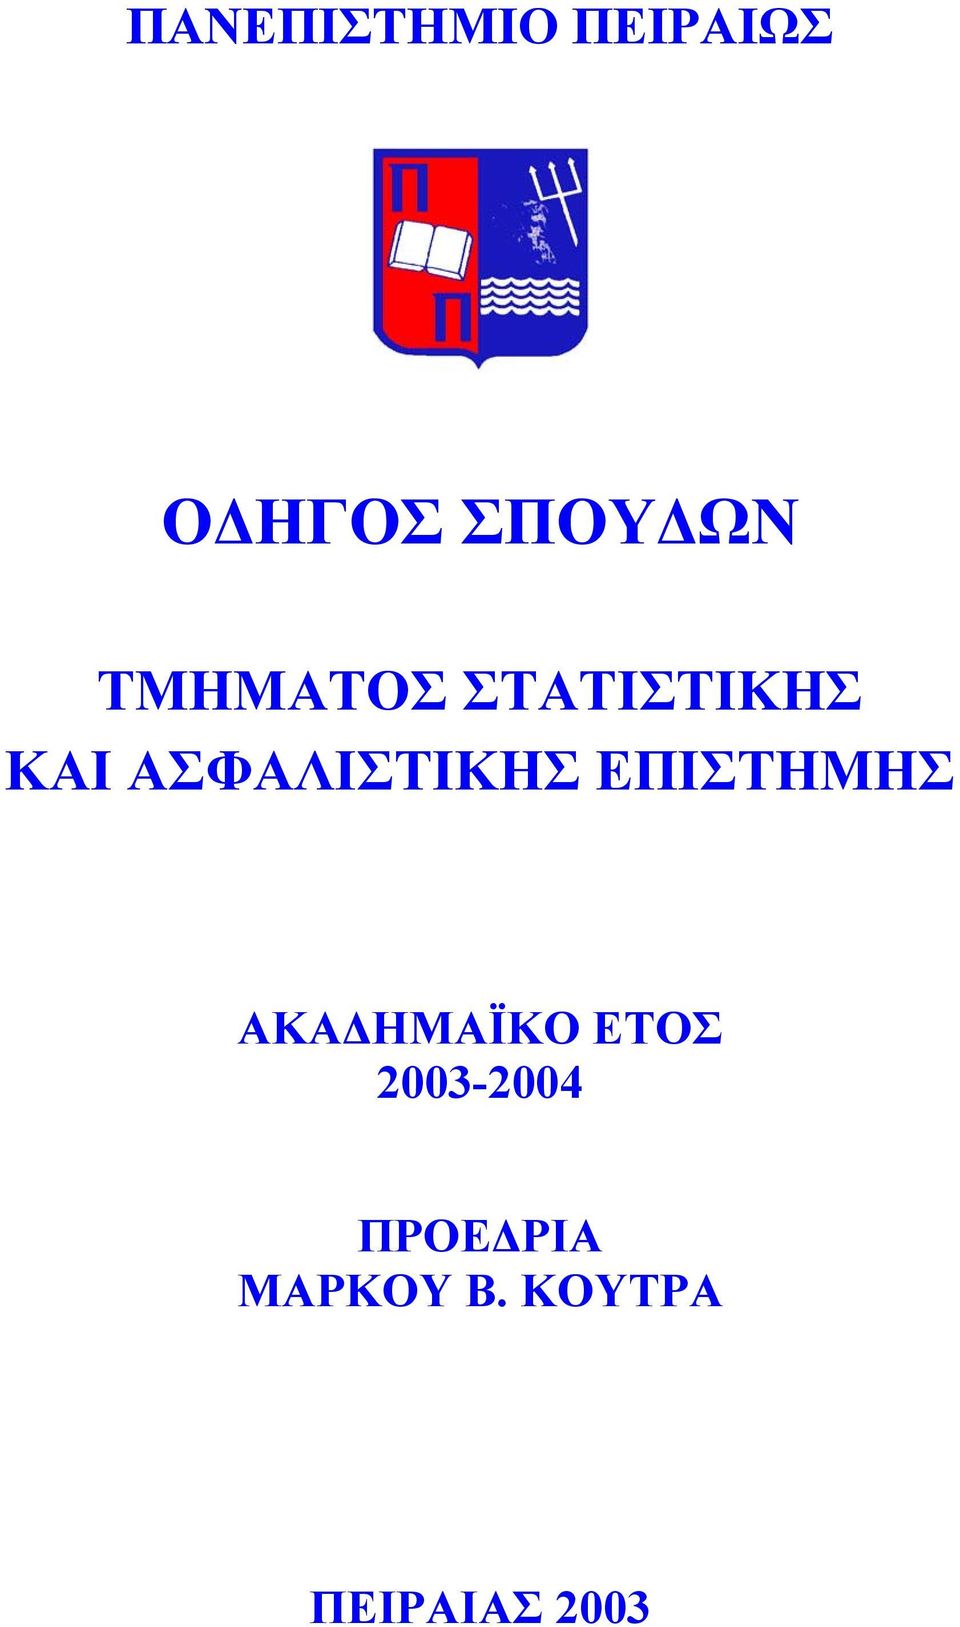 ΕΠΙΣΤΗΜΗΣ ΑΚΑ ΗΜΑΪΚΟ ΕΤΟΣ 2003-2004